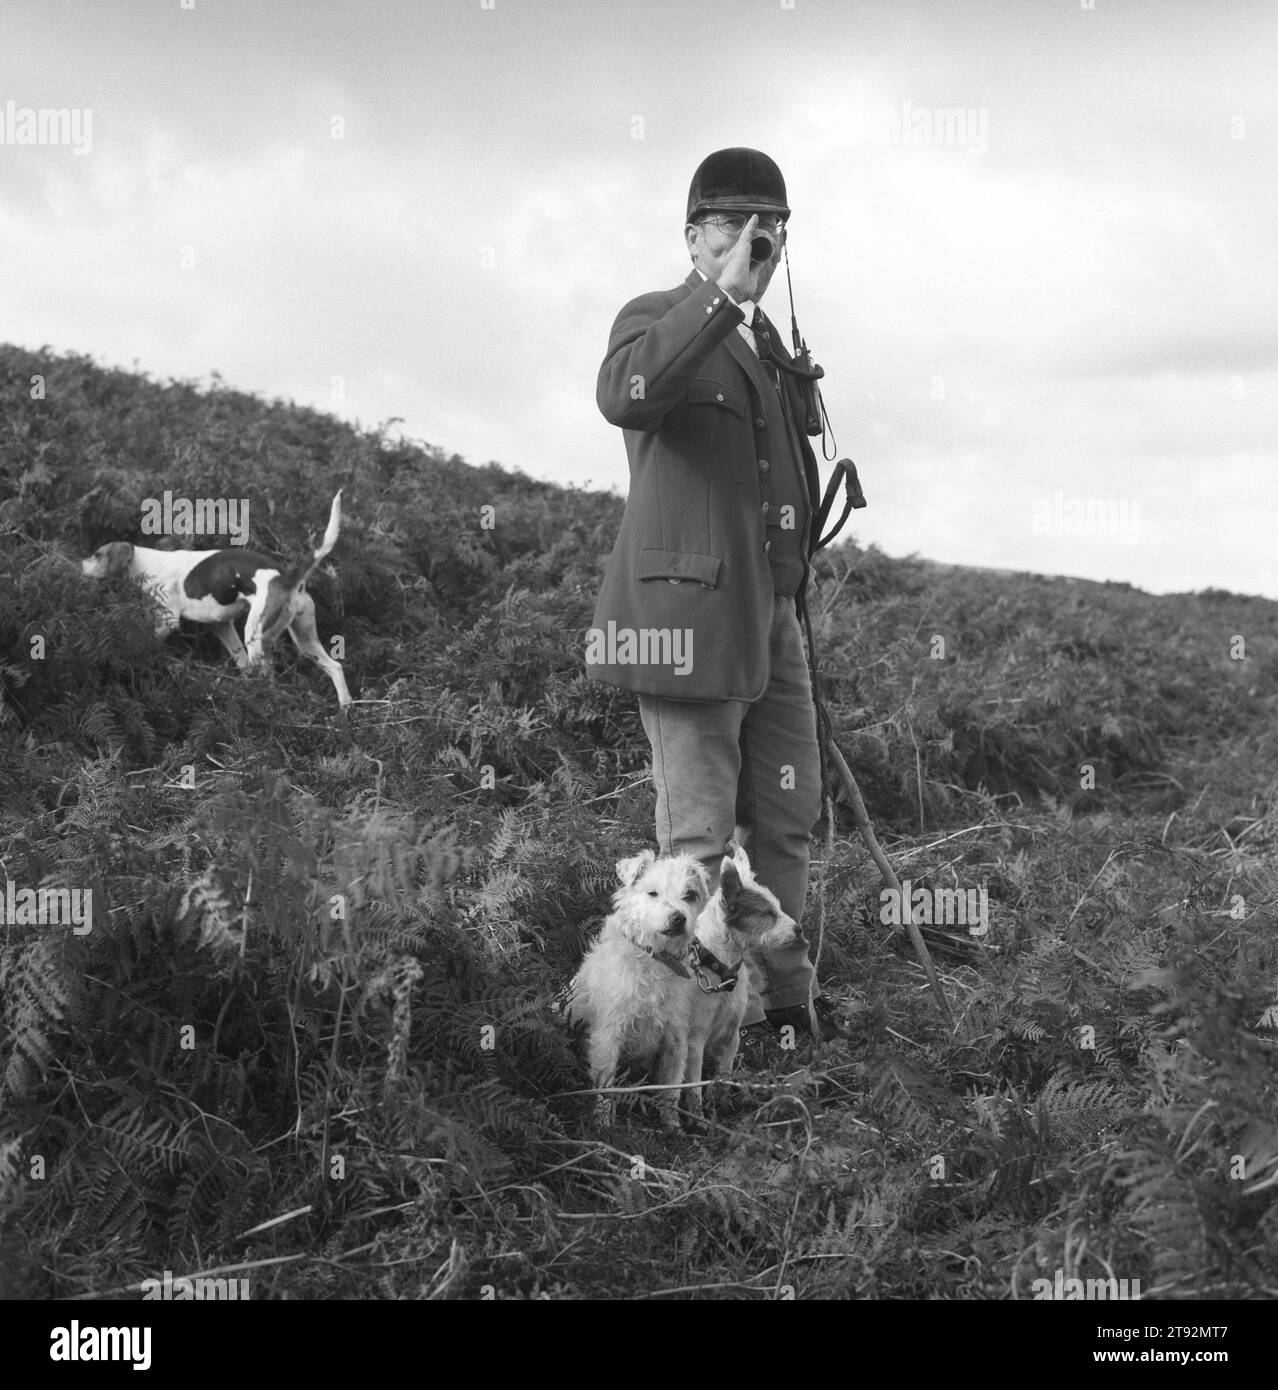 Fox Hunting, Regno Unito. Il Lake District. I Blencathra Foxhounds. Barry Todhunter, il cacciatore, raduna i cani prima di ricominciare. I suoi due terrier che lavorano lo accompagnano sempre. Il Blencathra è un Fall Pack, niente cavallo, tutti camminano. Il paesaggio è troppo ripido per i cavalli. 2002, 2000 Inghilterra HOMER SYKES Foto Stock